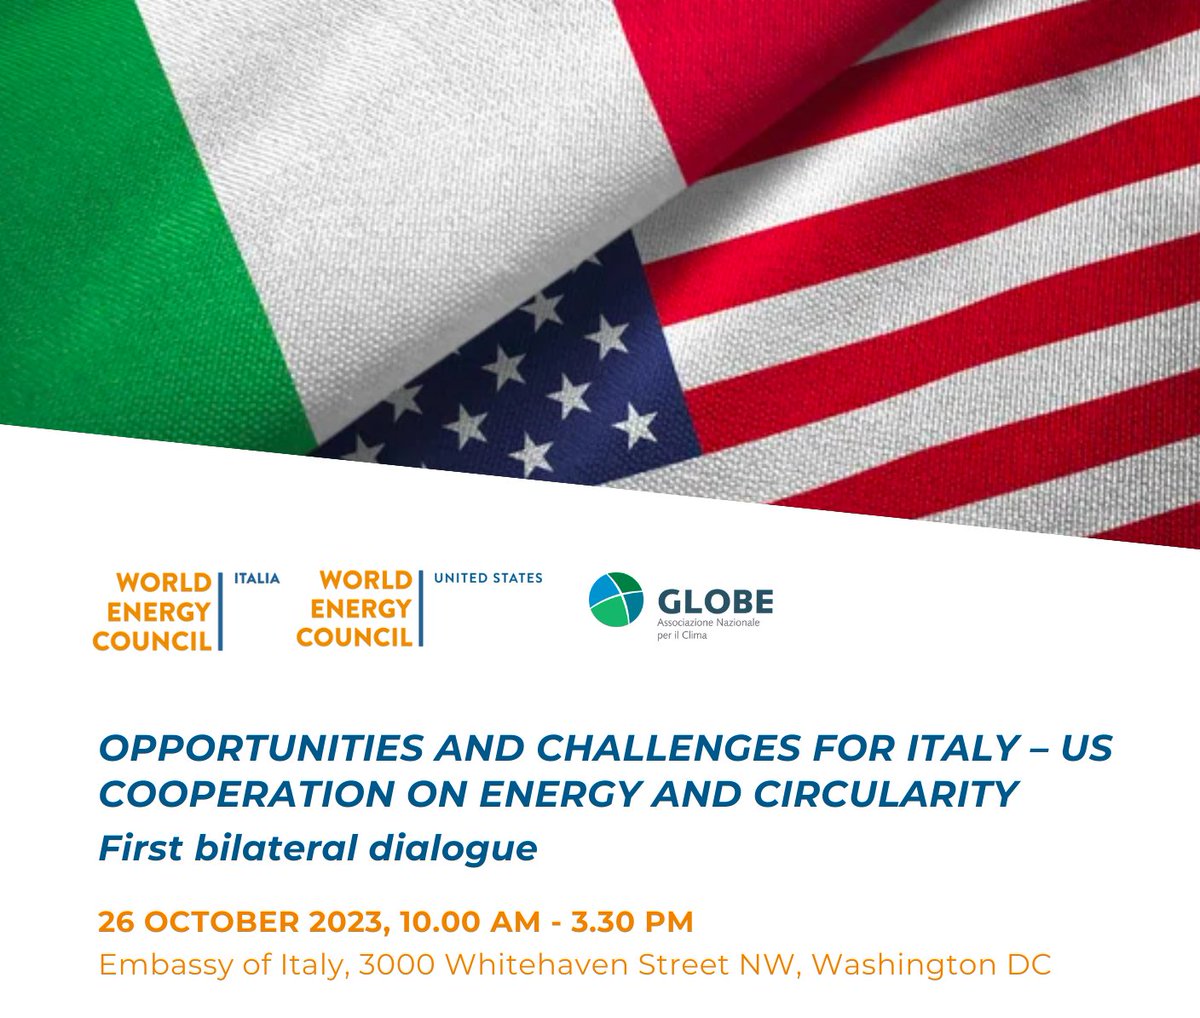 Oggi a Washington con @WECouncil US e @ItaliaGlobe per il Primo bilaterale sulla cooperazione #Italia - #Usa su #energia e #transizioneEcologica
👉bit.ly/40dMHzM

Confronto tra istituzioni e aziende su #cooperazioneIndustriale, progetti #transizioneEcologica, #EnergyJobs